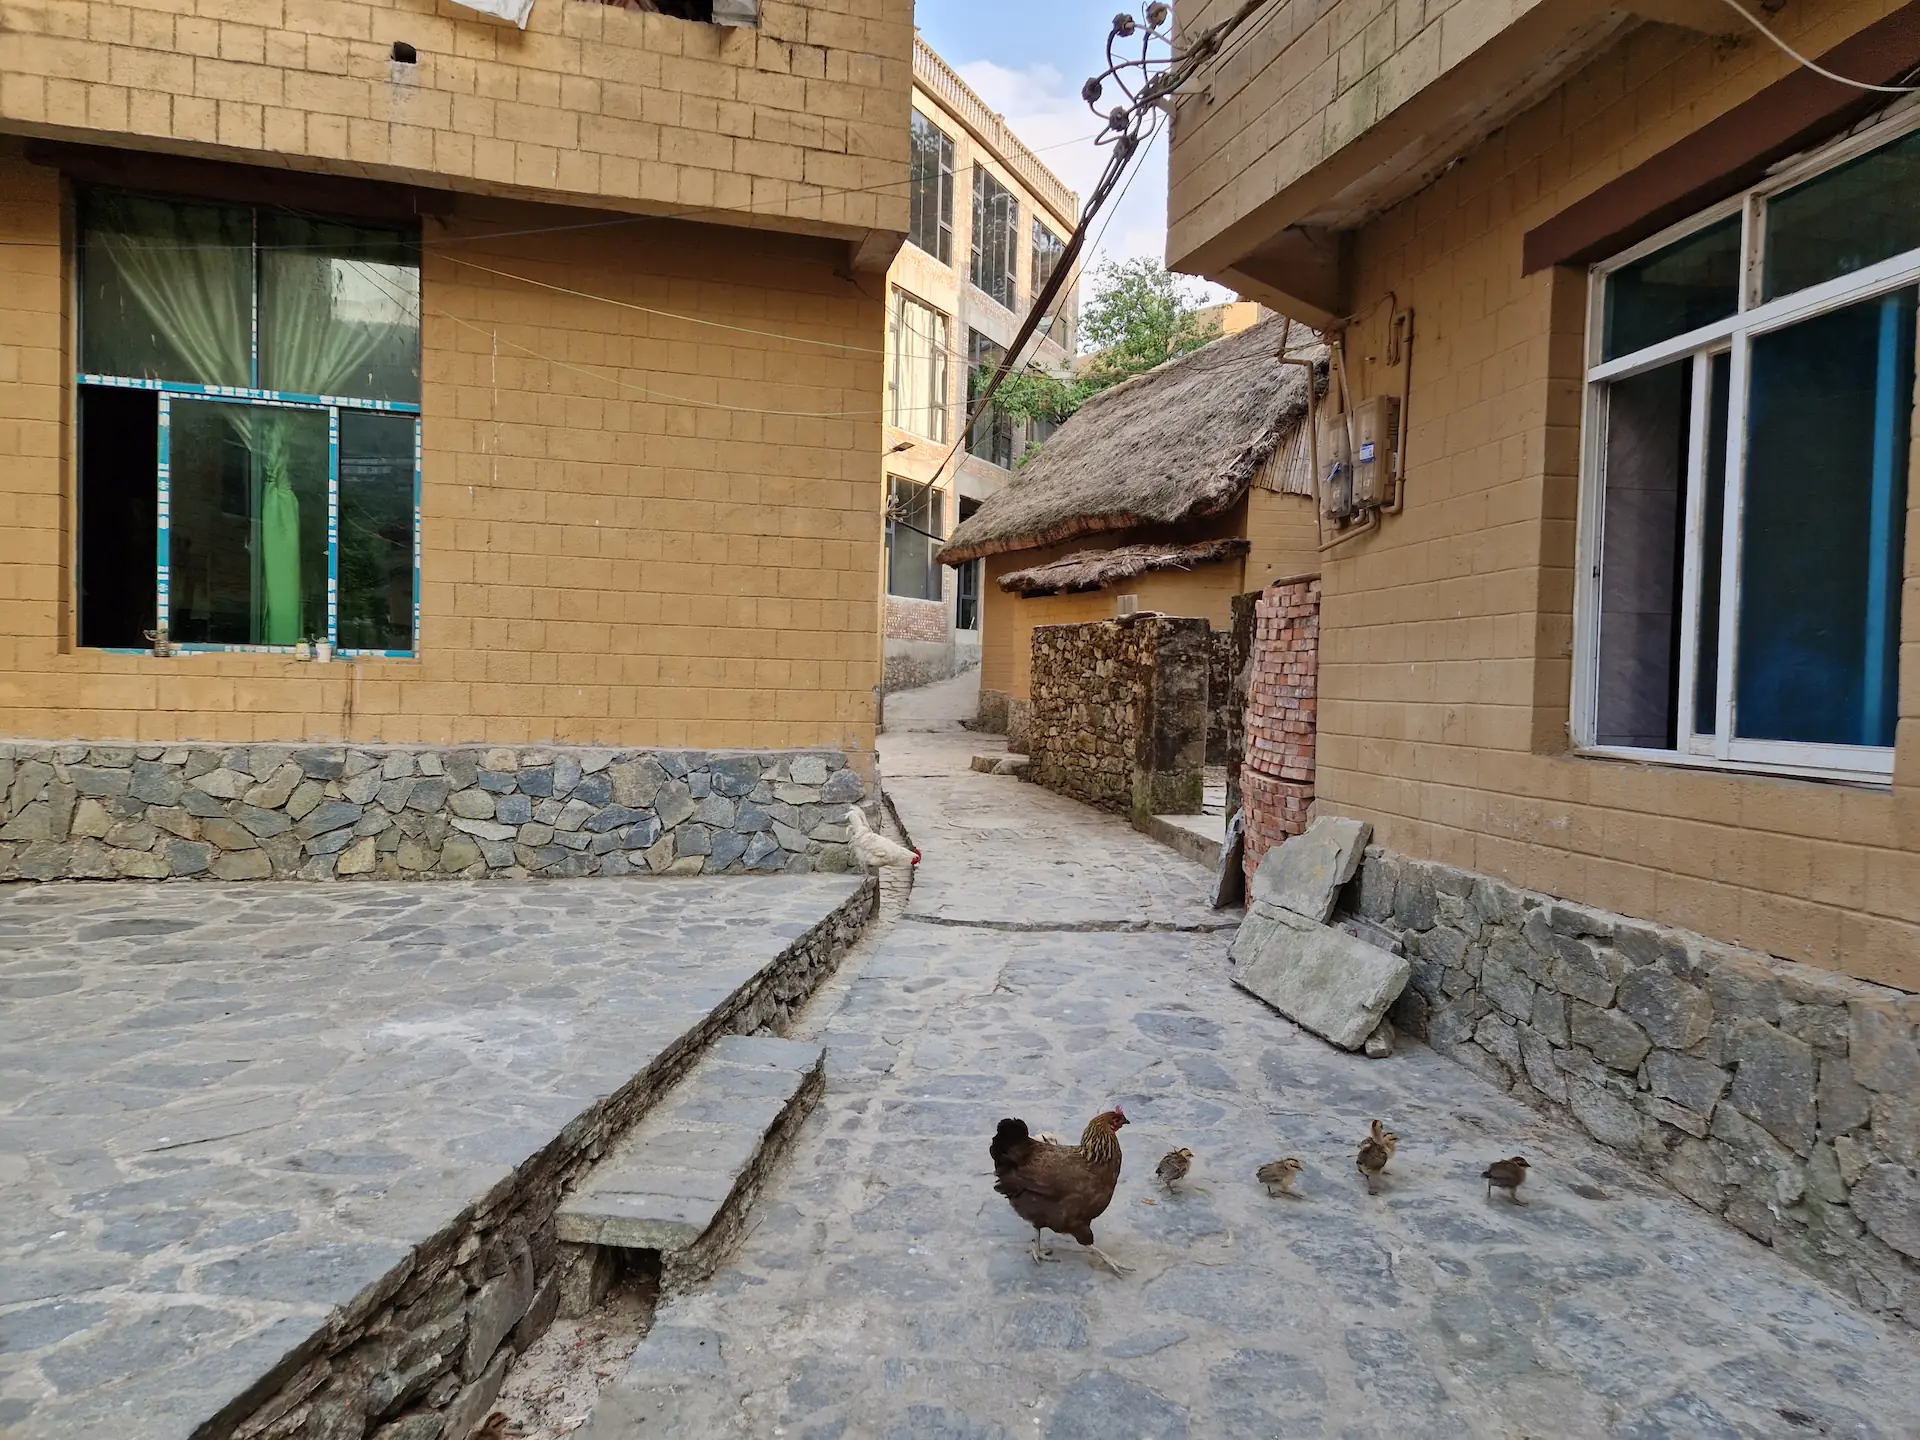 Dans une ruelle du village, une poule et ses cinq petits poussins picorent.